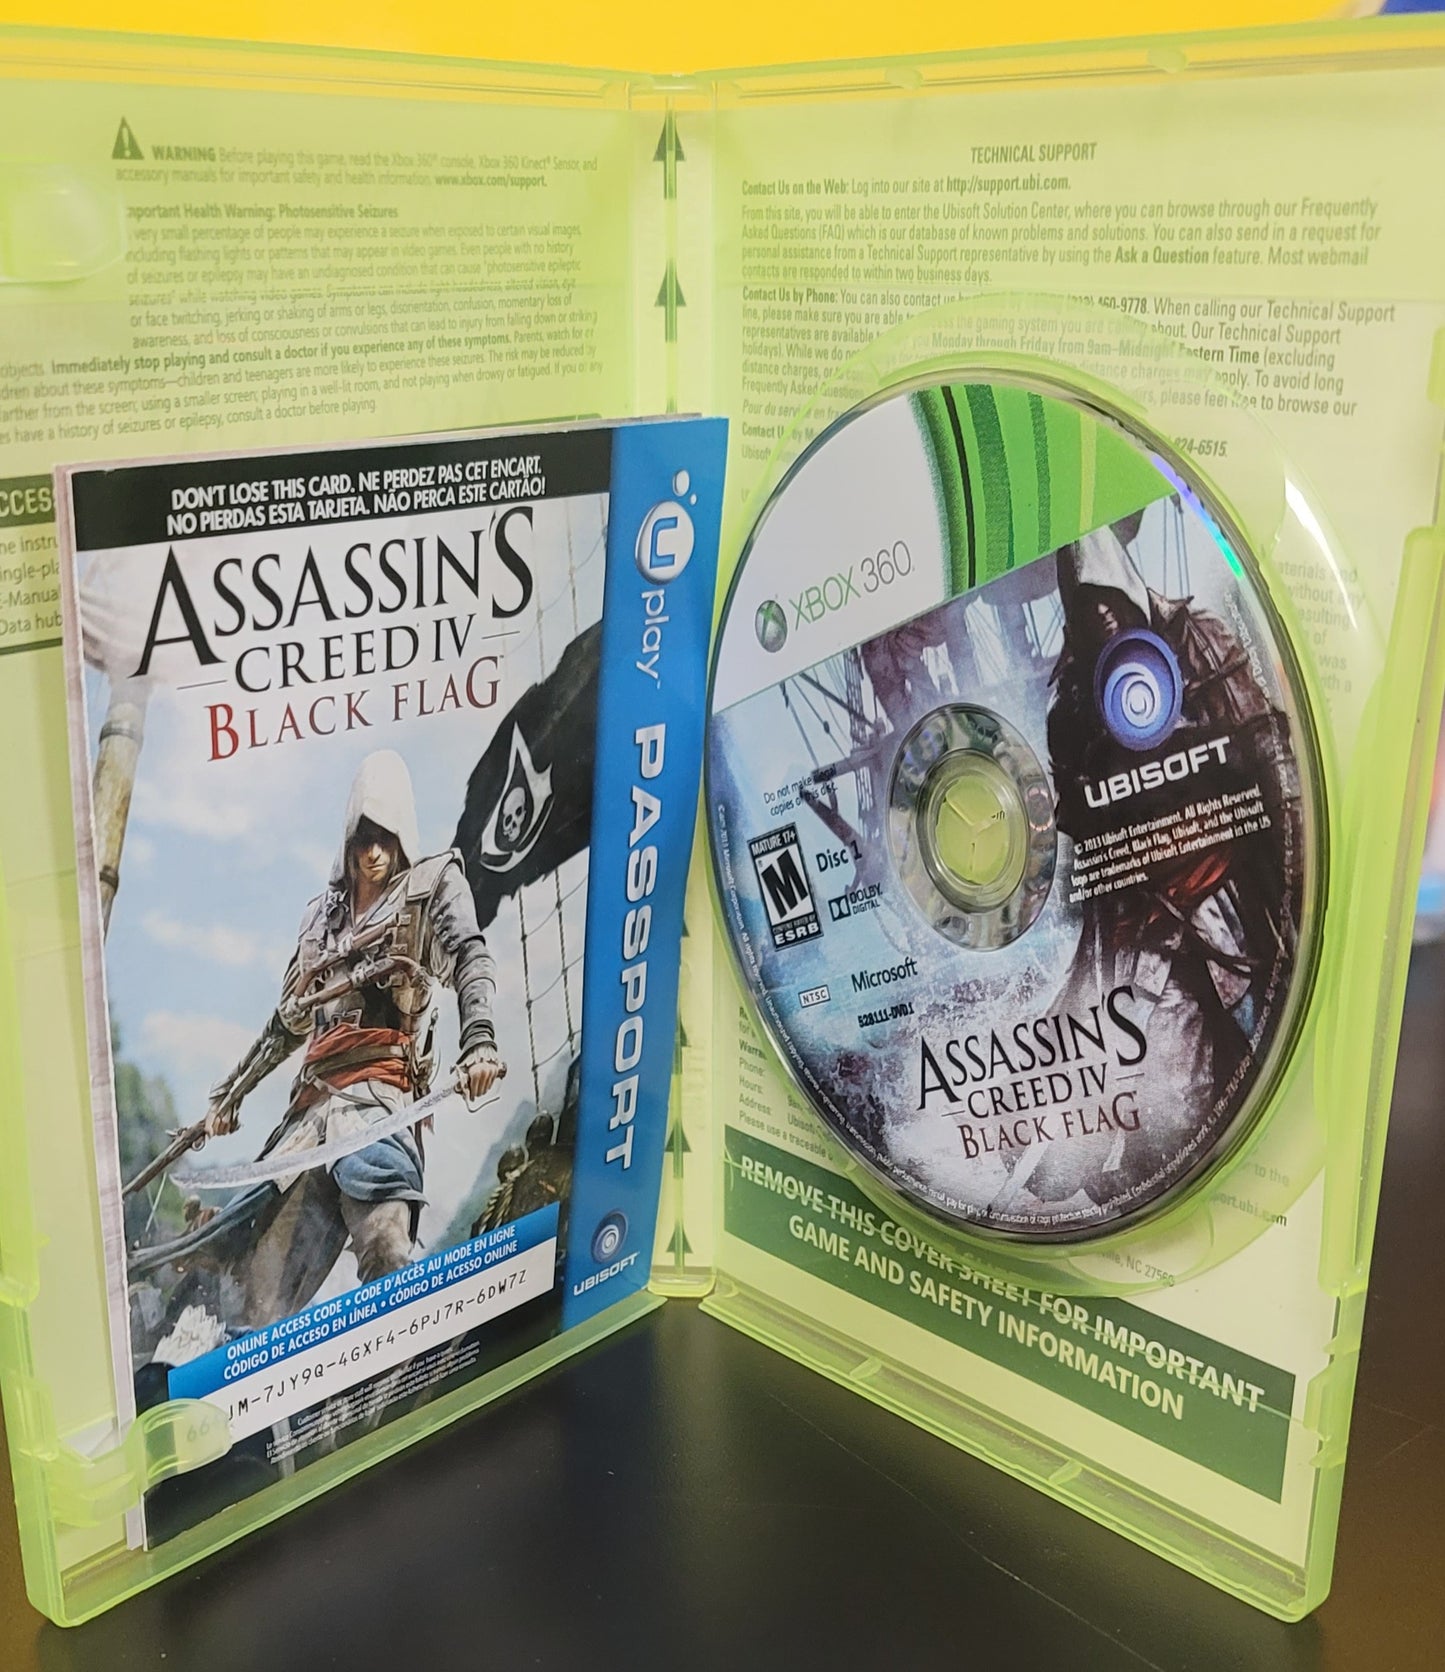 Assassins Creed 4 Black Flag - Xb360 - Used